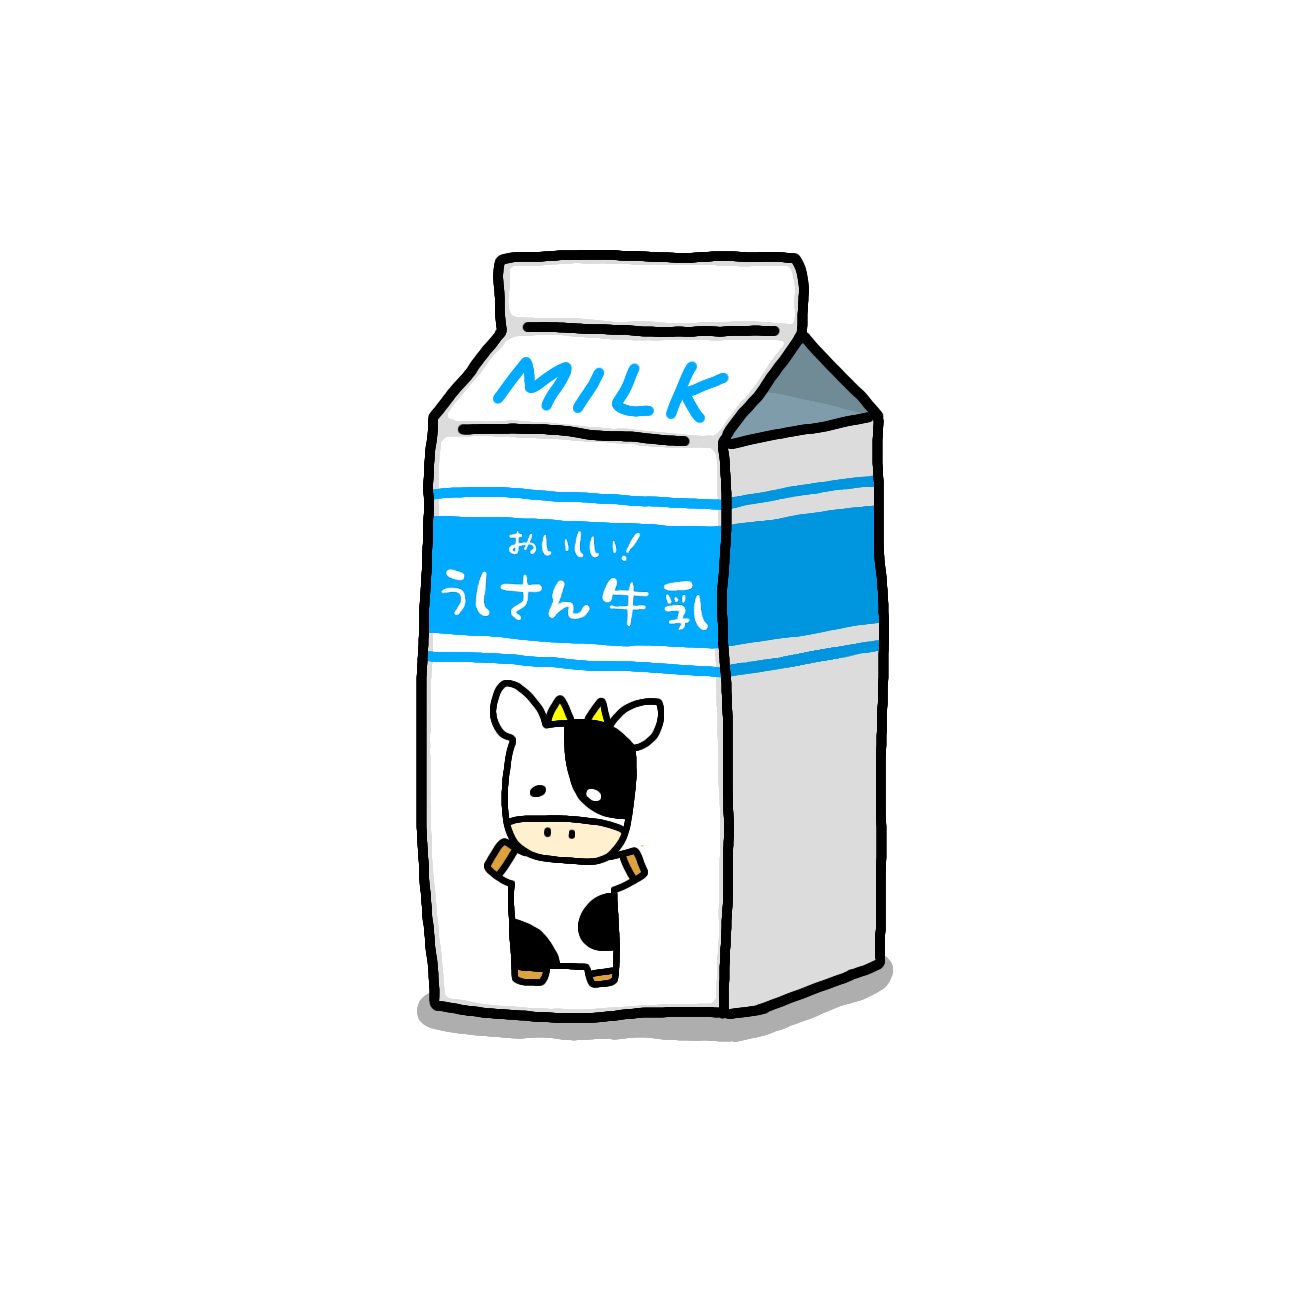 ヤマモトエミ うしさん印のおいしい牛乳 イラスト ゆるいイラスト 絵描きさんと繋がりたい T Co Jifvedzftn Twitter